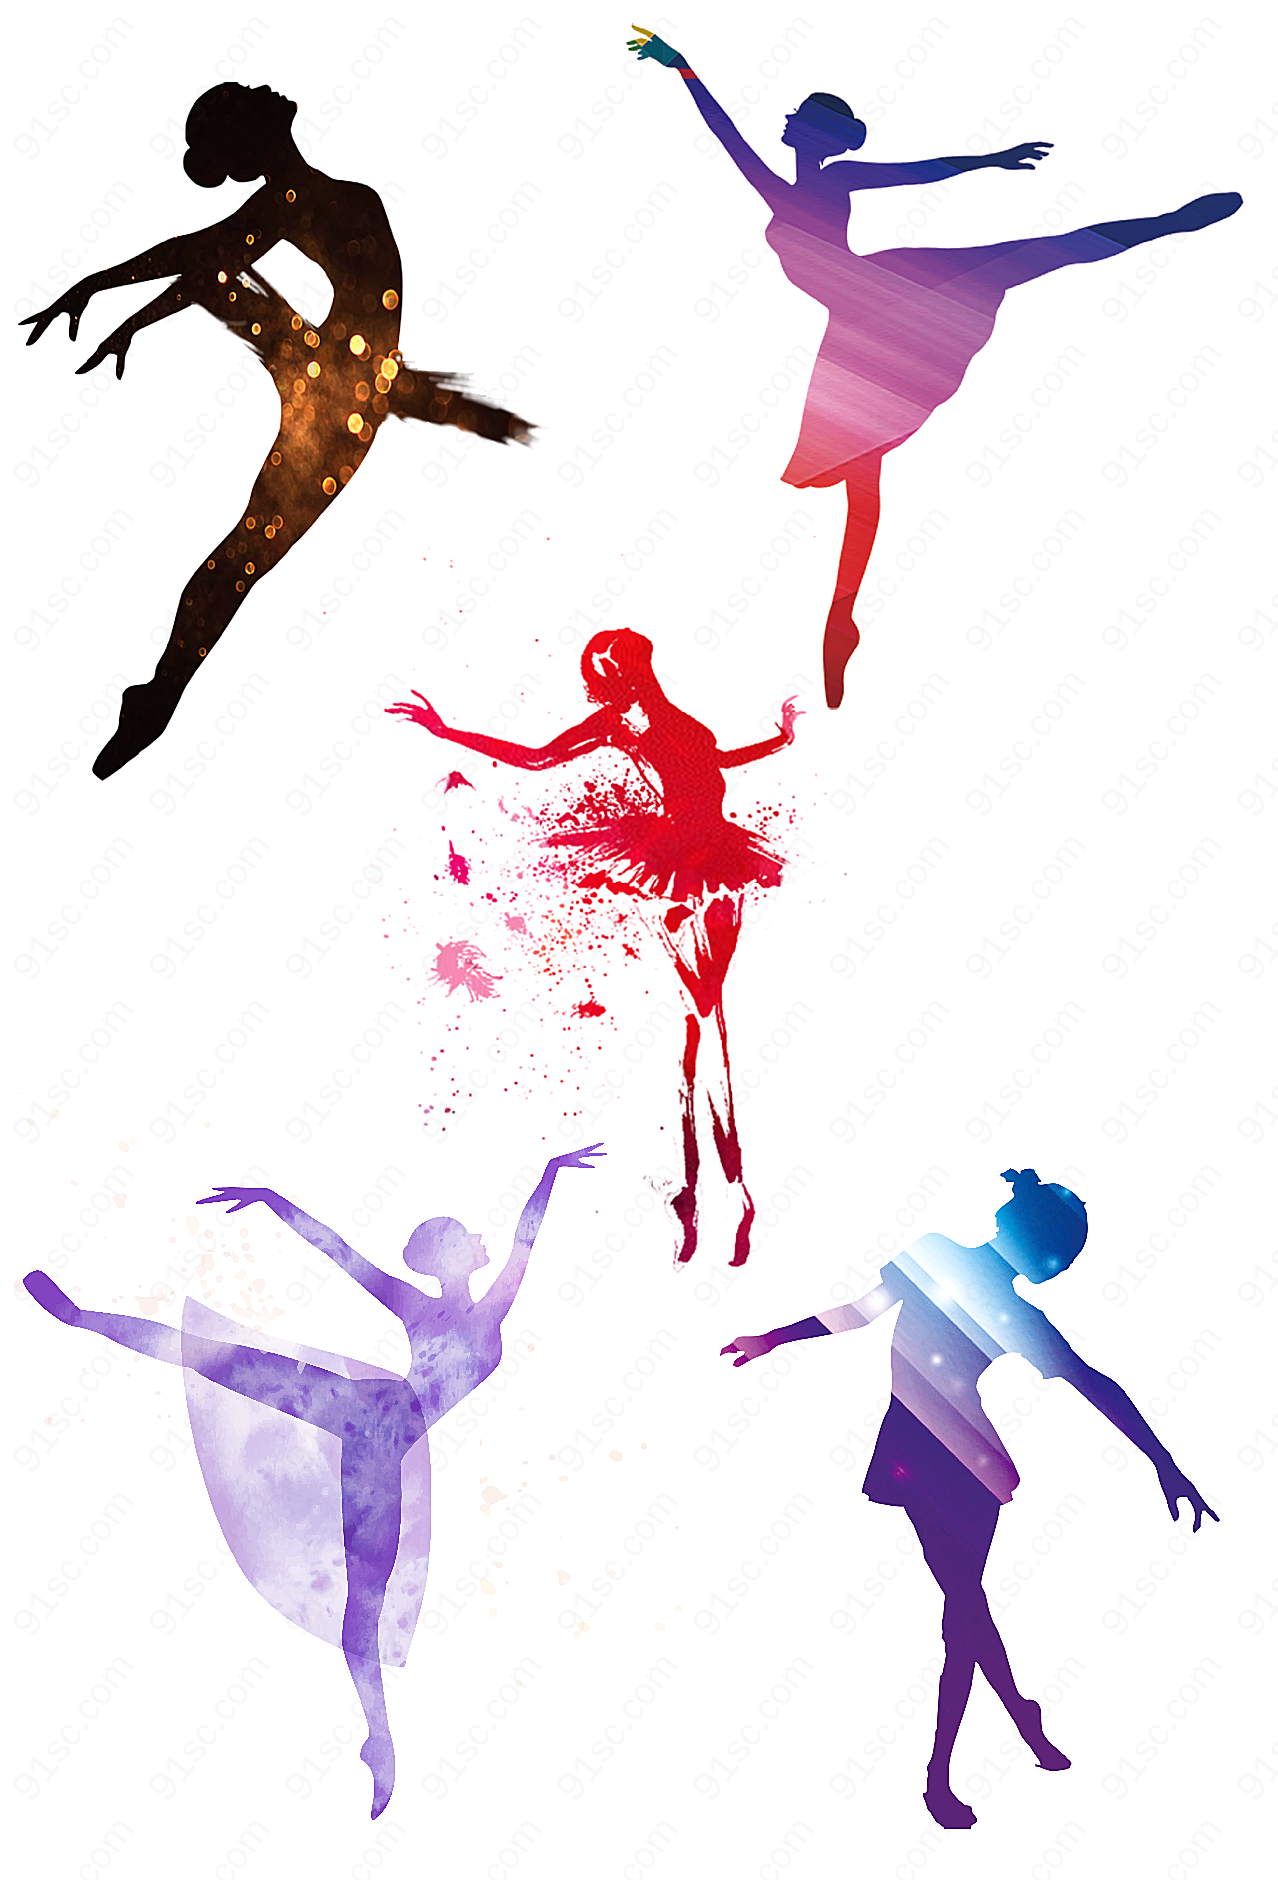 舞动奇迹-舞蹈效果素材设计元素